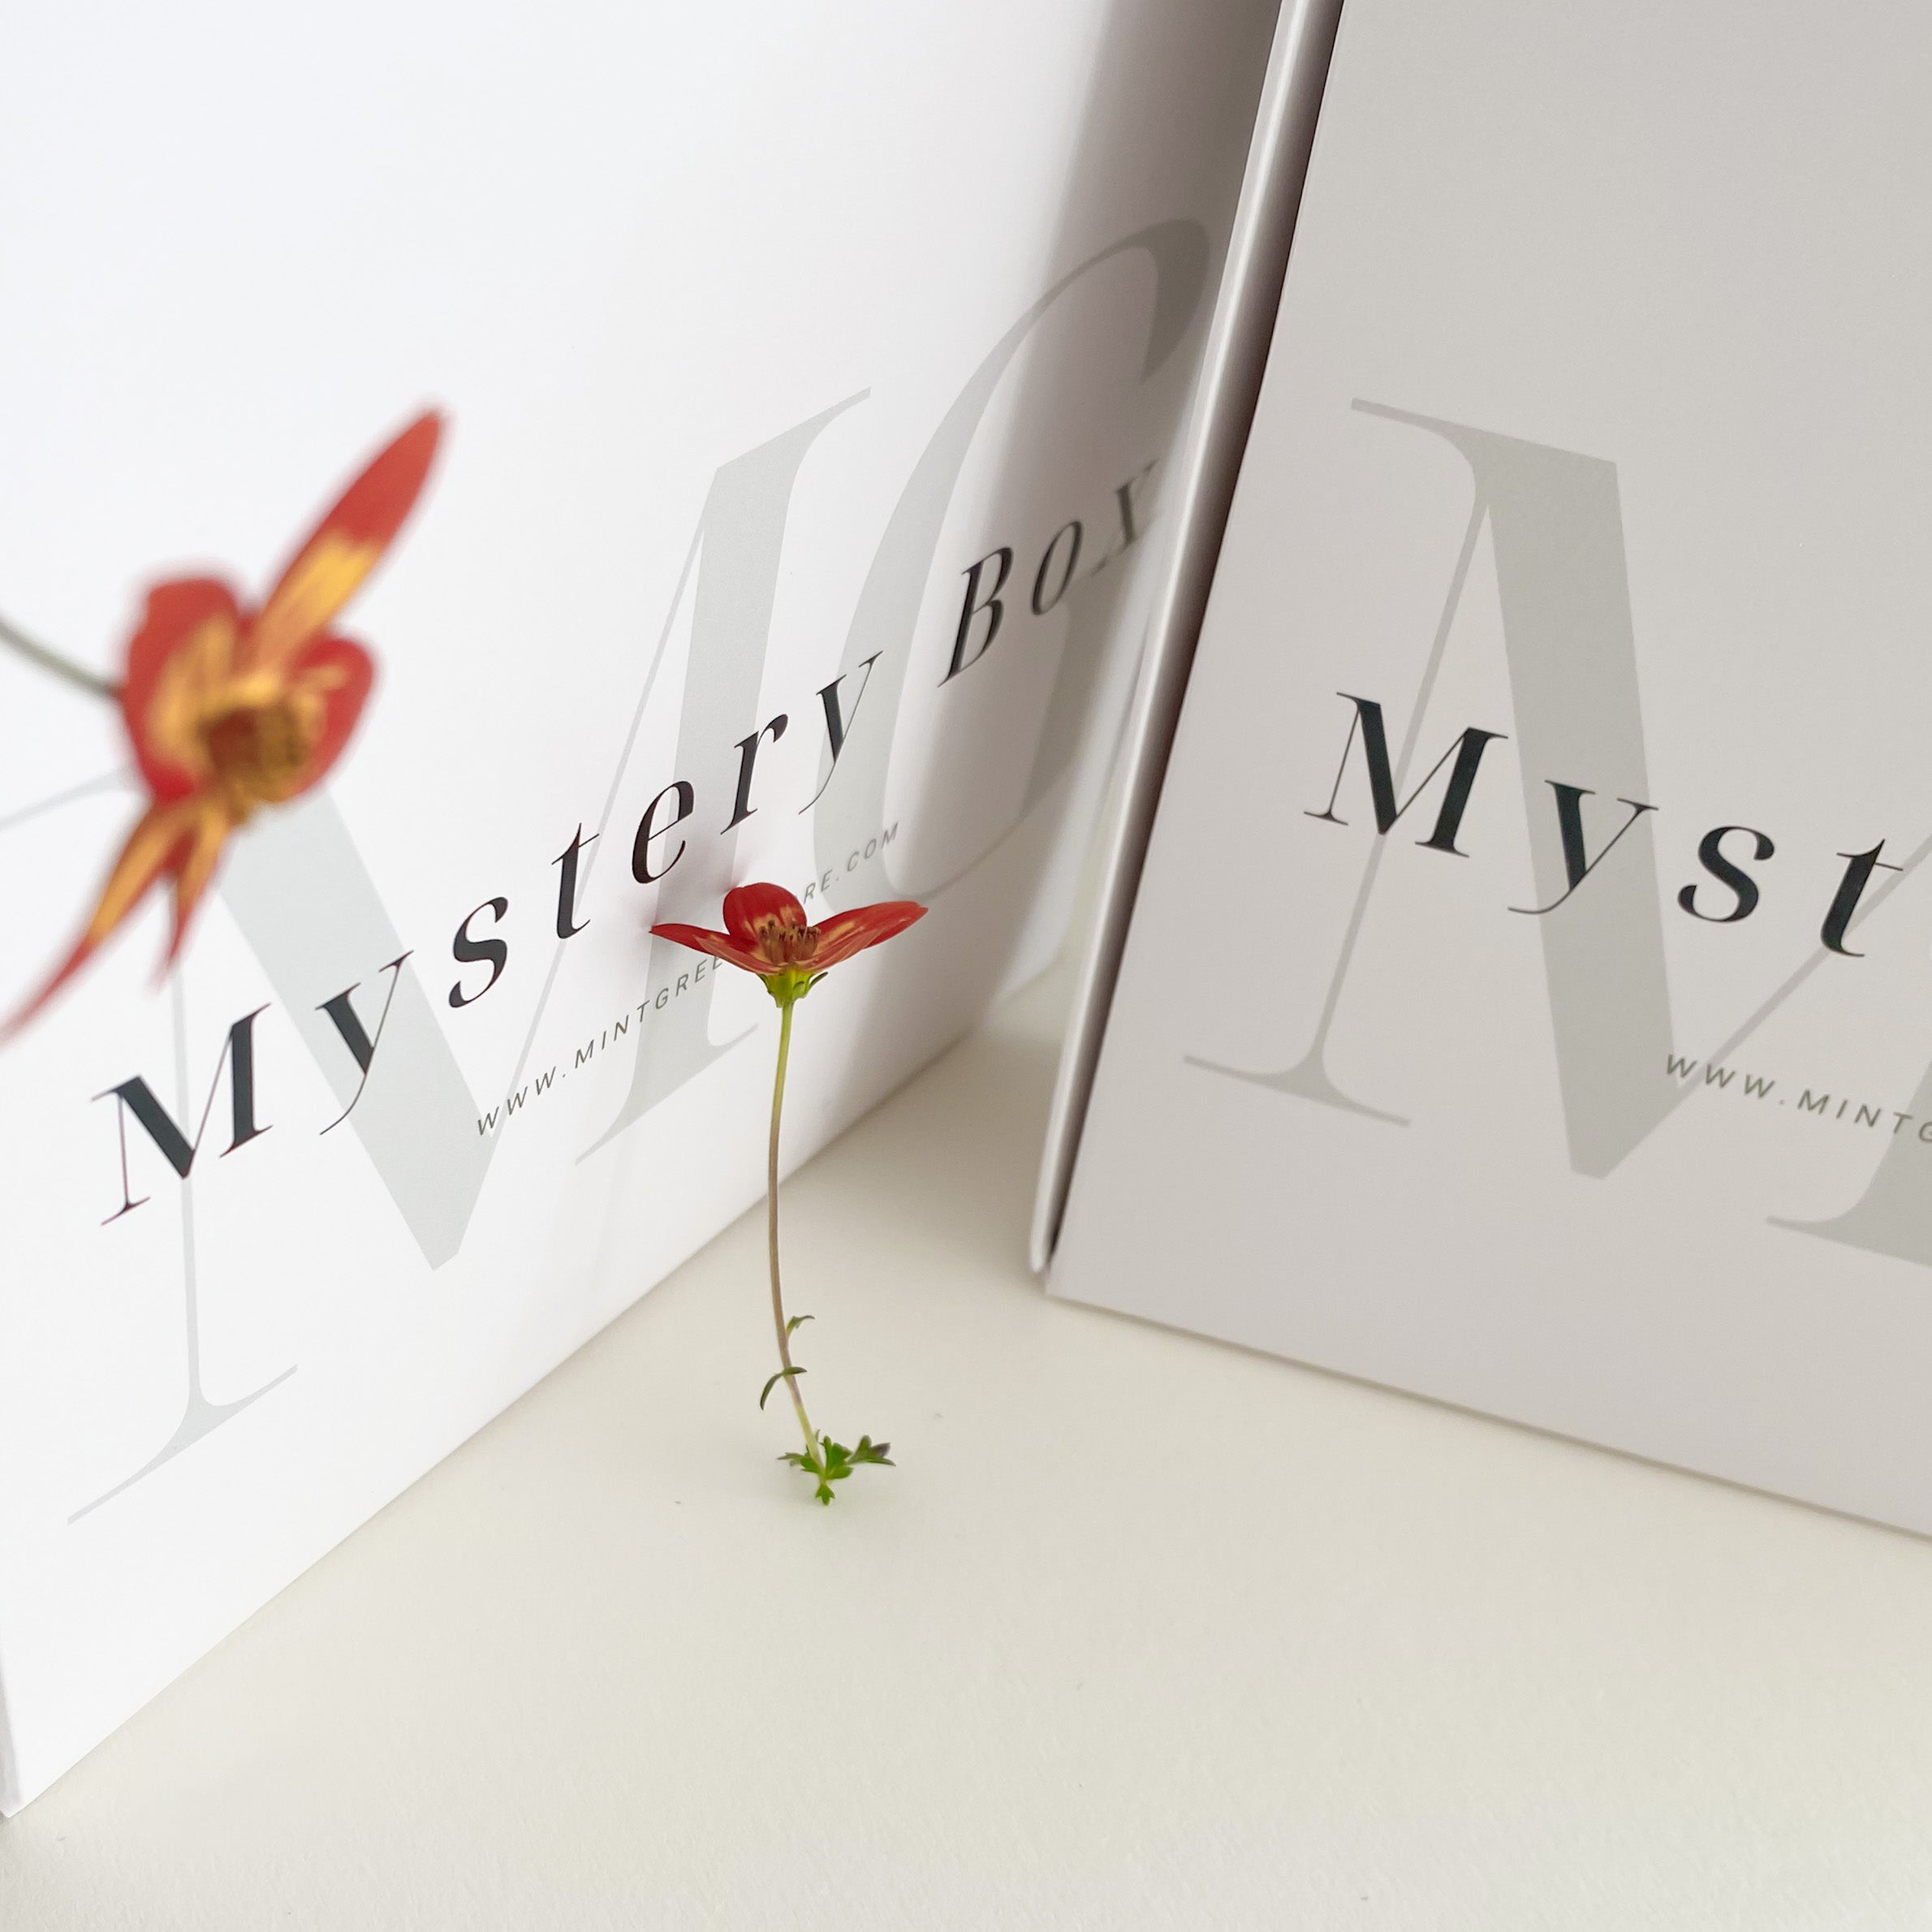 Caixa Mistério | Mystery package